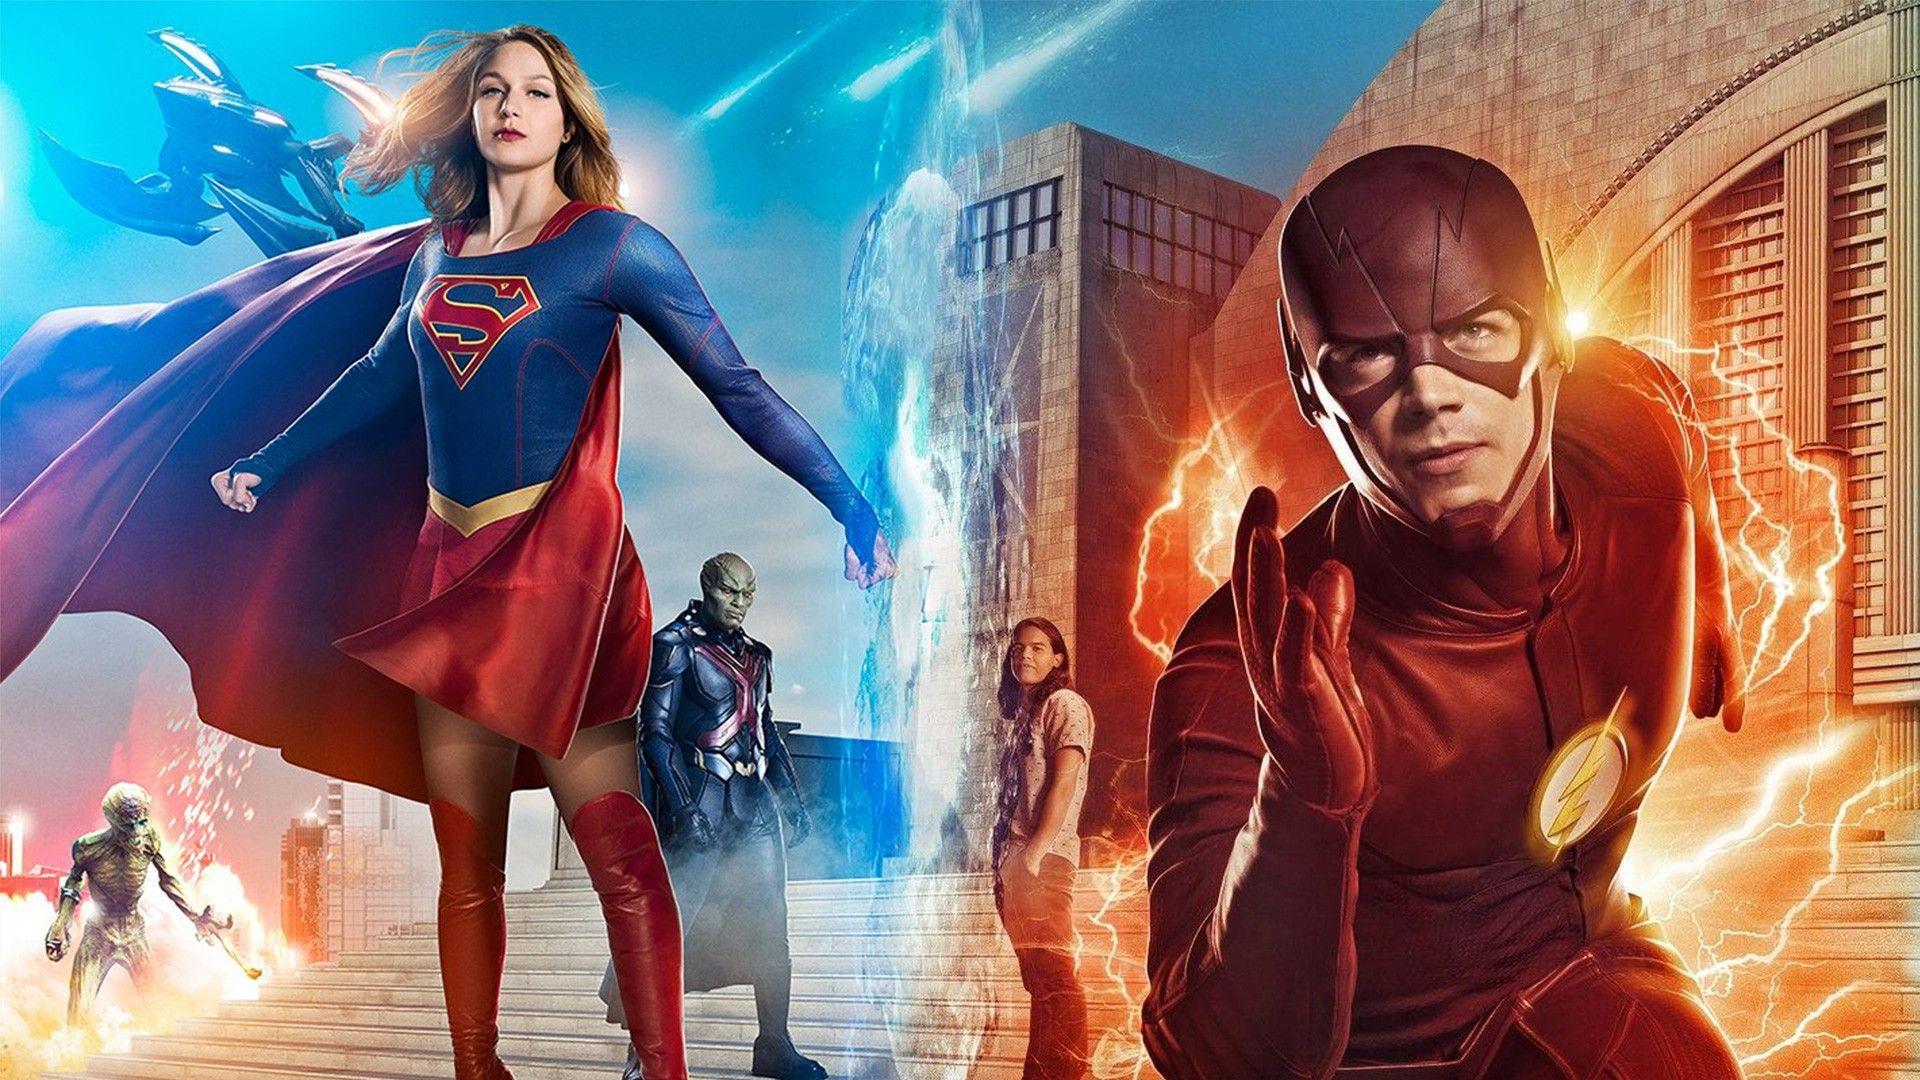 Wallpaper DC Universe, Supergirl, Flash, Arrow, Legends of Tomorrow